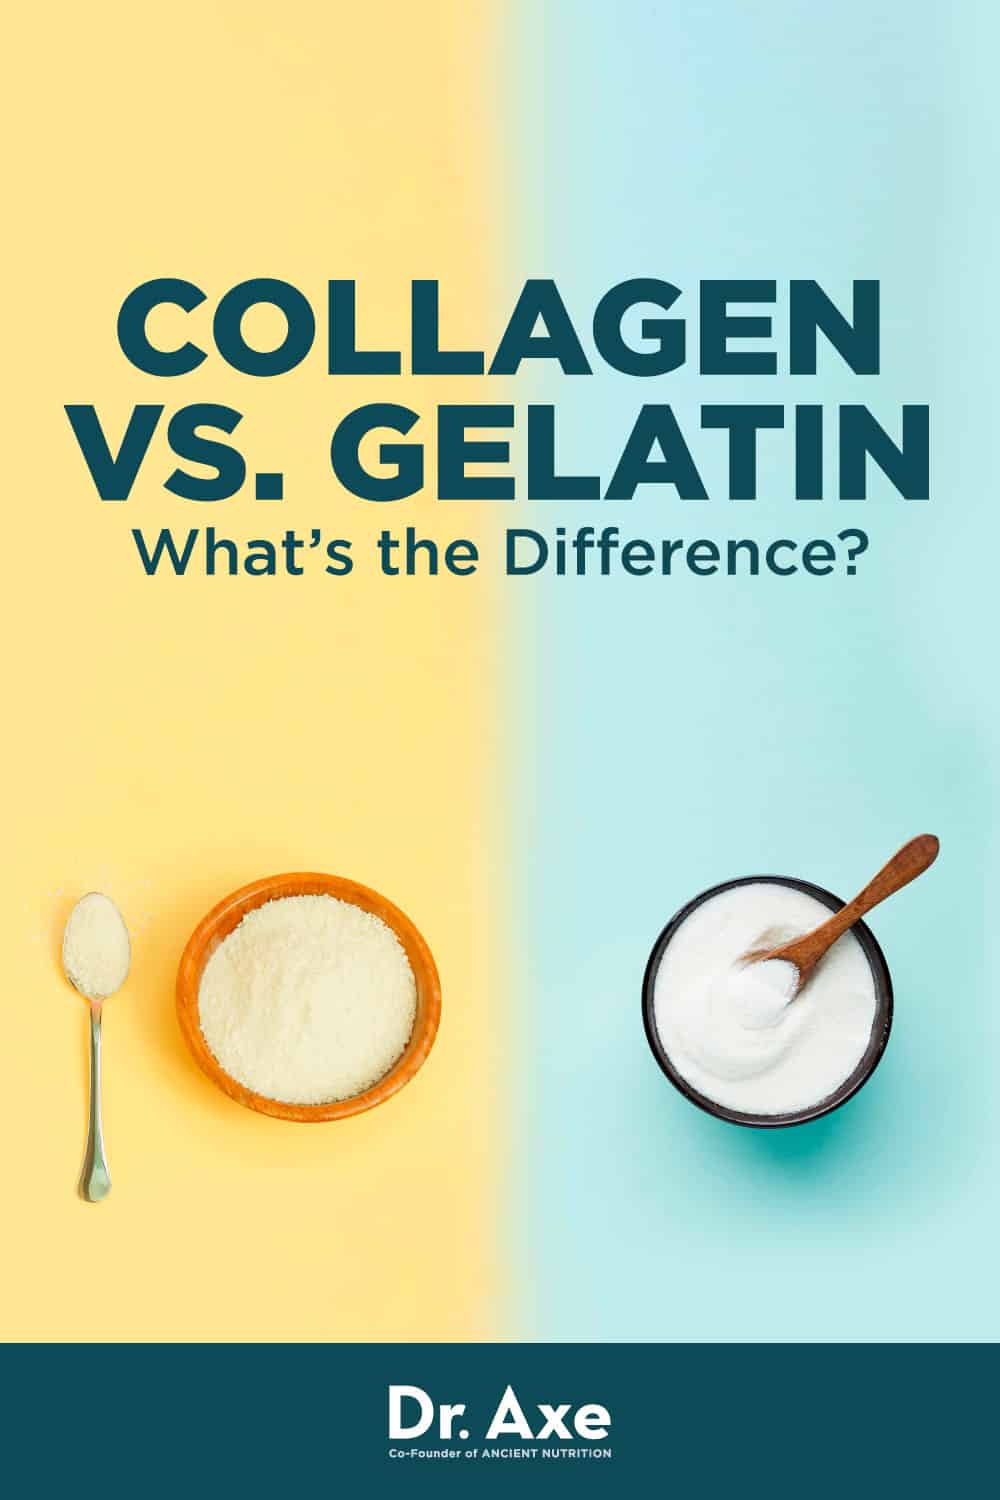 collagen vs gelatin for joint pain